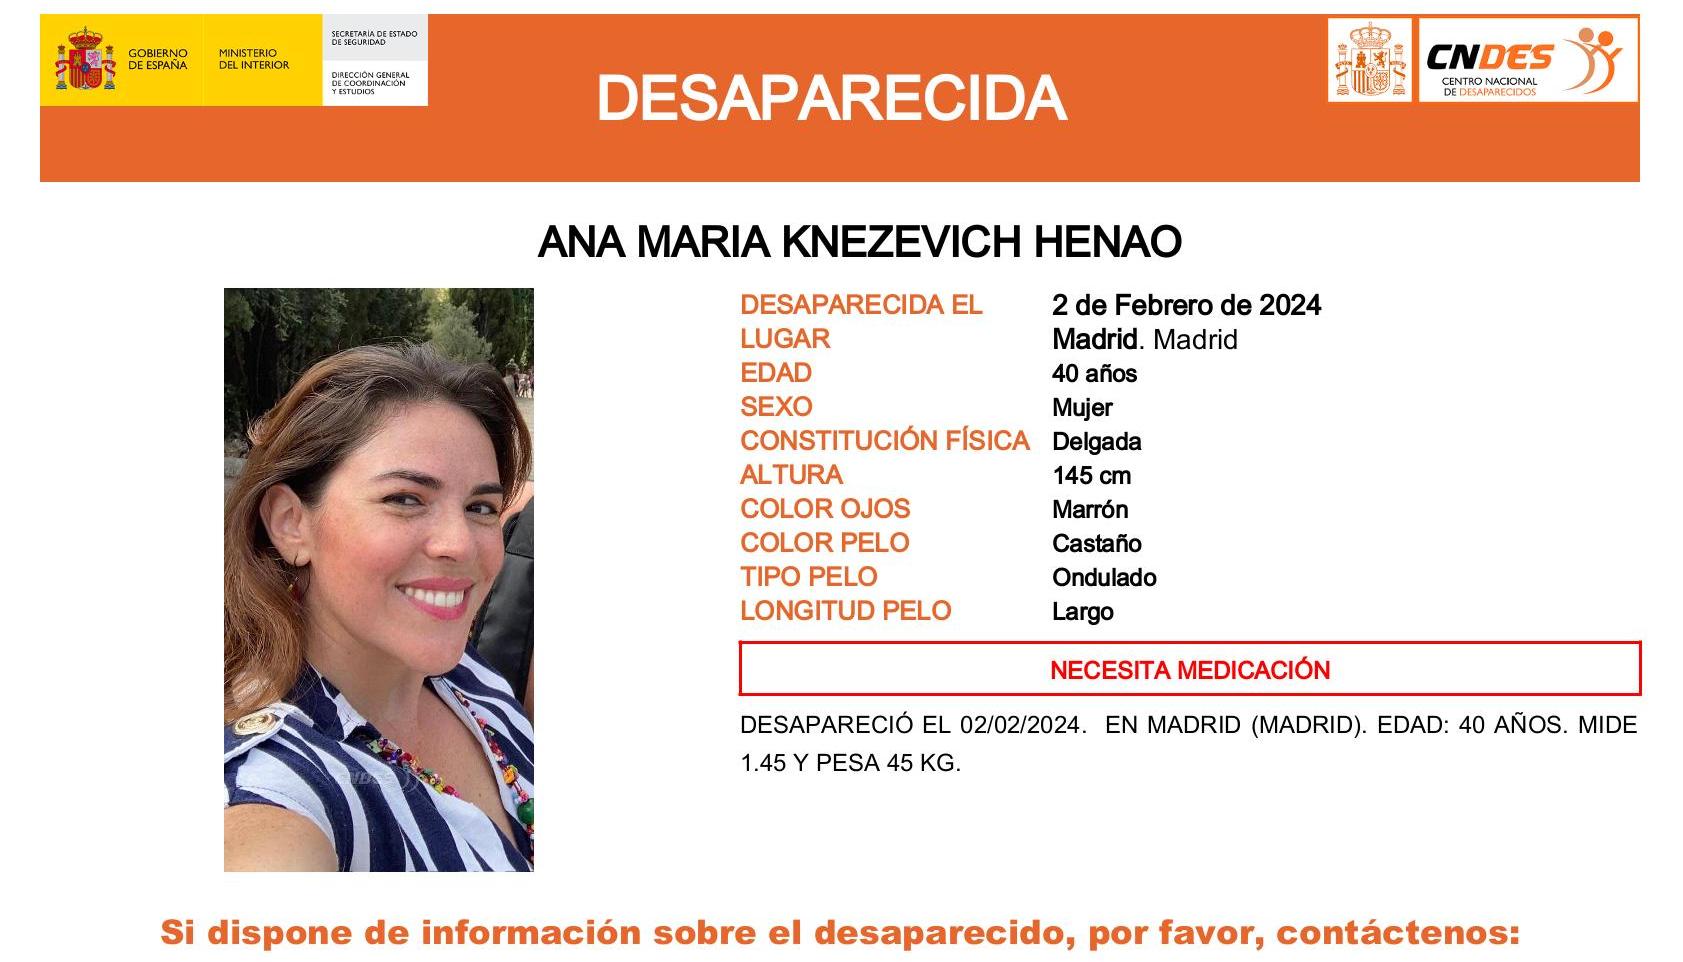 Los afiches con los que buscan en España a la colombiana Ana María Knezevich